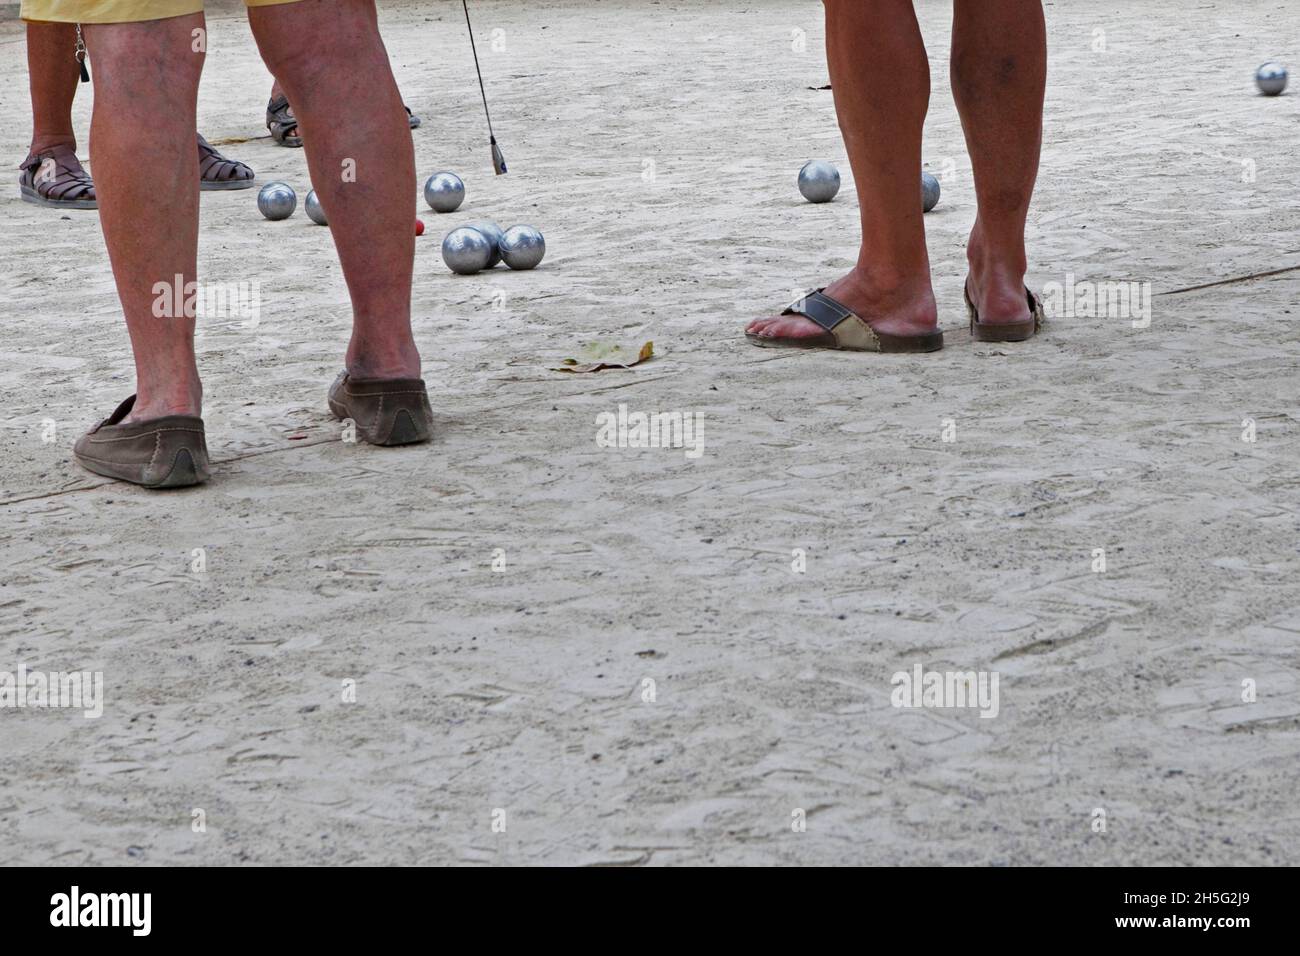 Franzosen, die gerade -auf einem öffentlichen Platz- Boule spielen. Keine Erkennbarkeit, da nur Beine. Cannes, Frankreich. Stock Photo